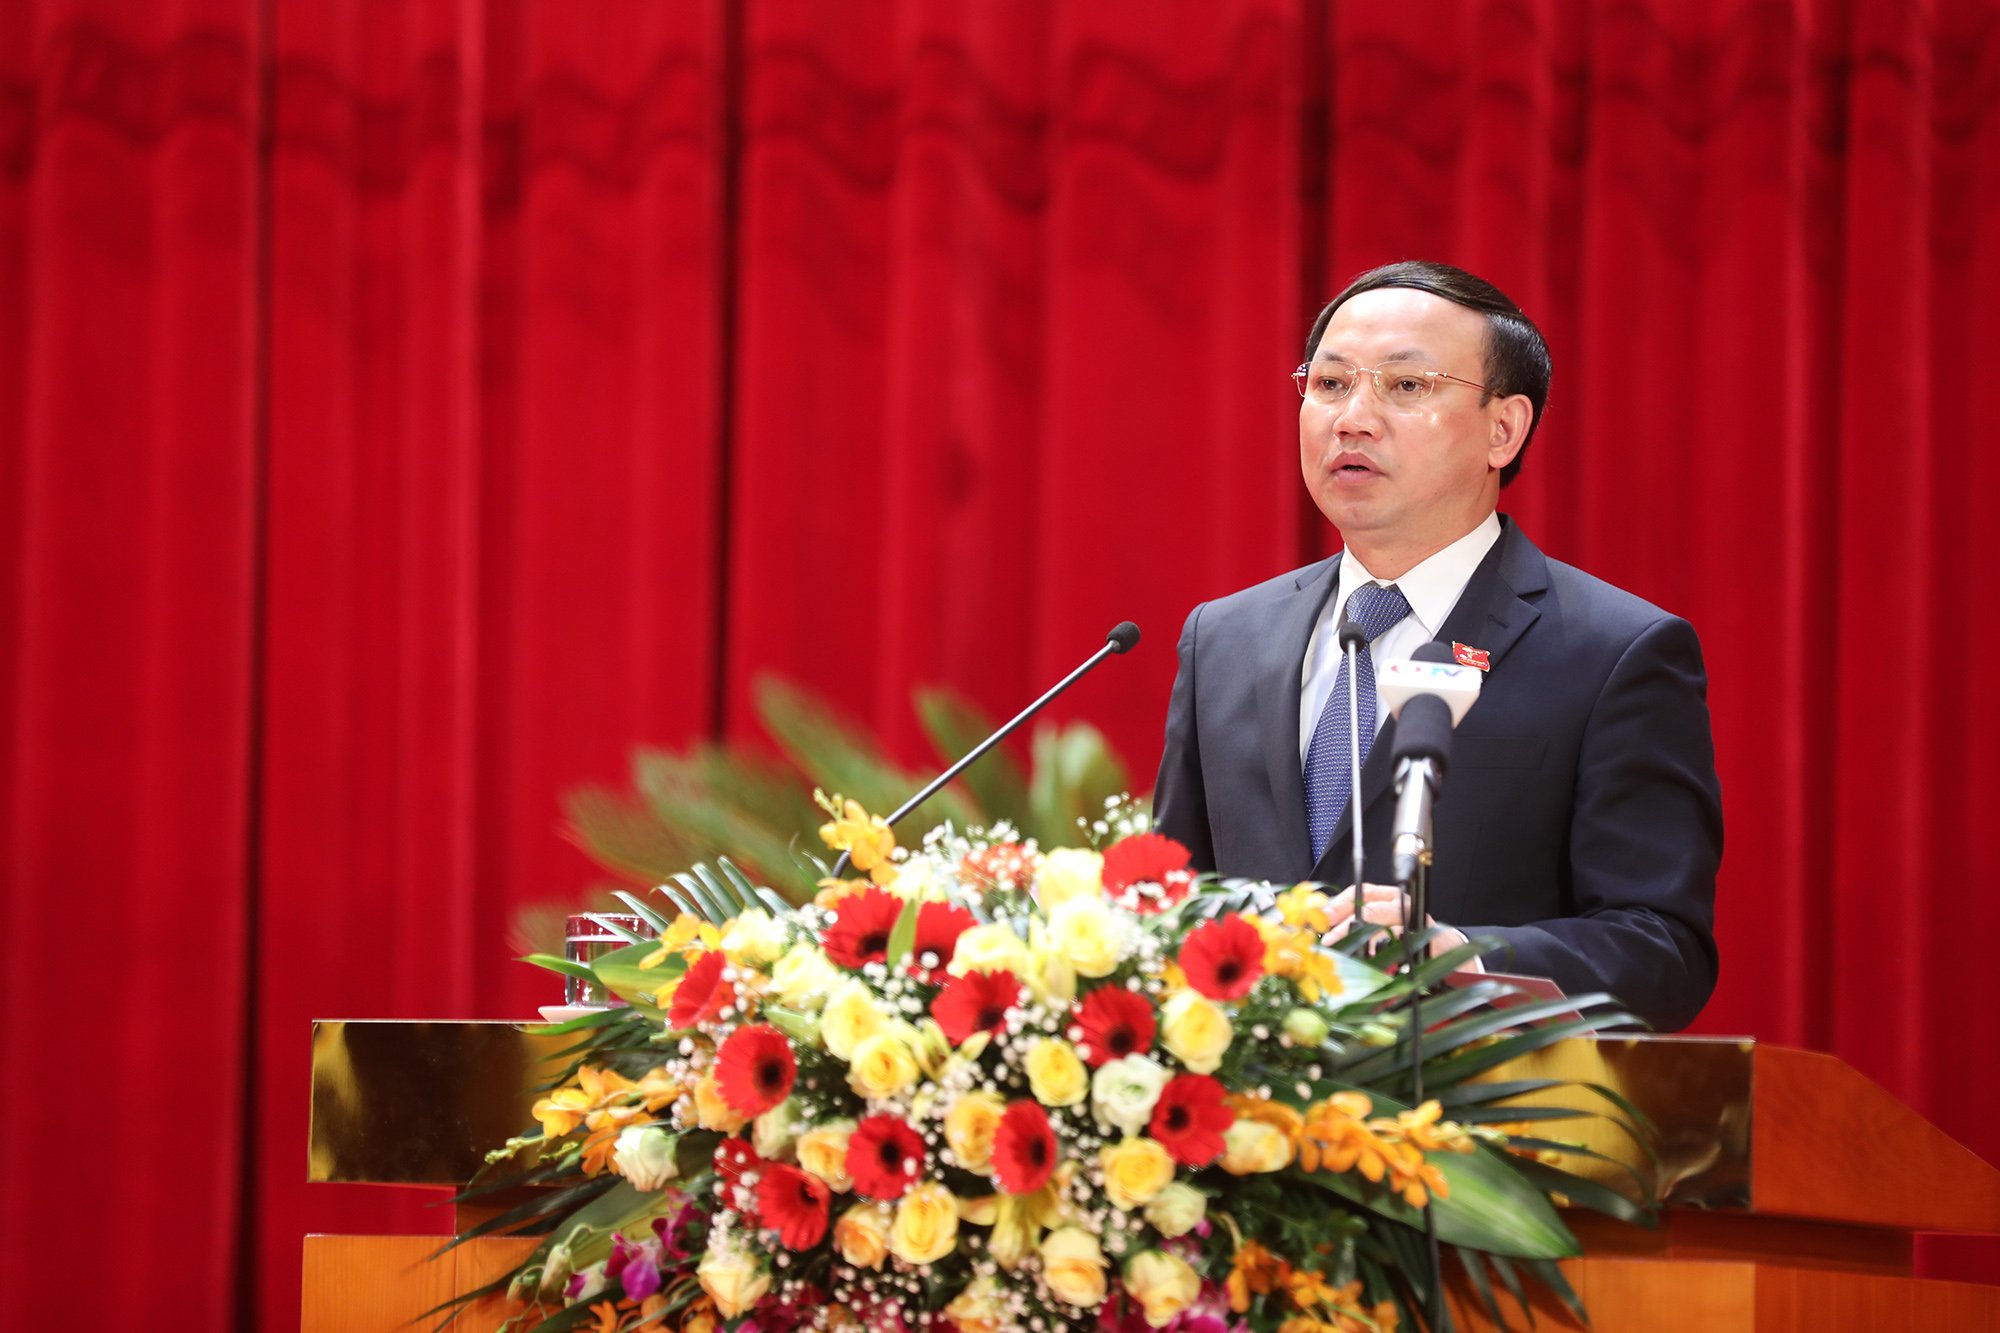 Đồng chí Nguyễn Xuân Ký, Bí thư Tỉnh ủy, Chủ tịch HĐND tỉnh, phát biểu khai mạc kỳ họp HĐND tỉnh lần thứ 21.